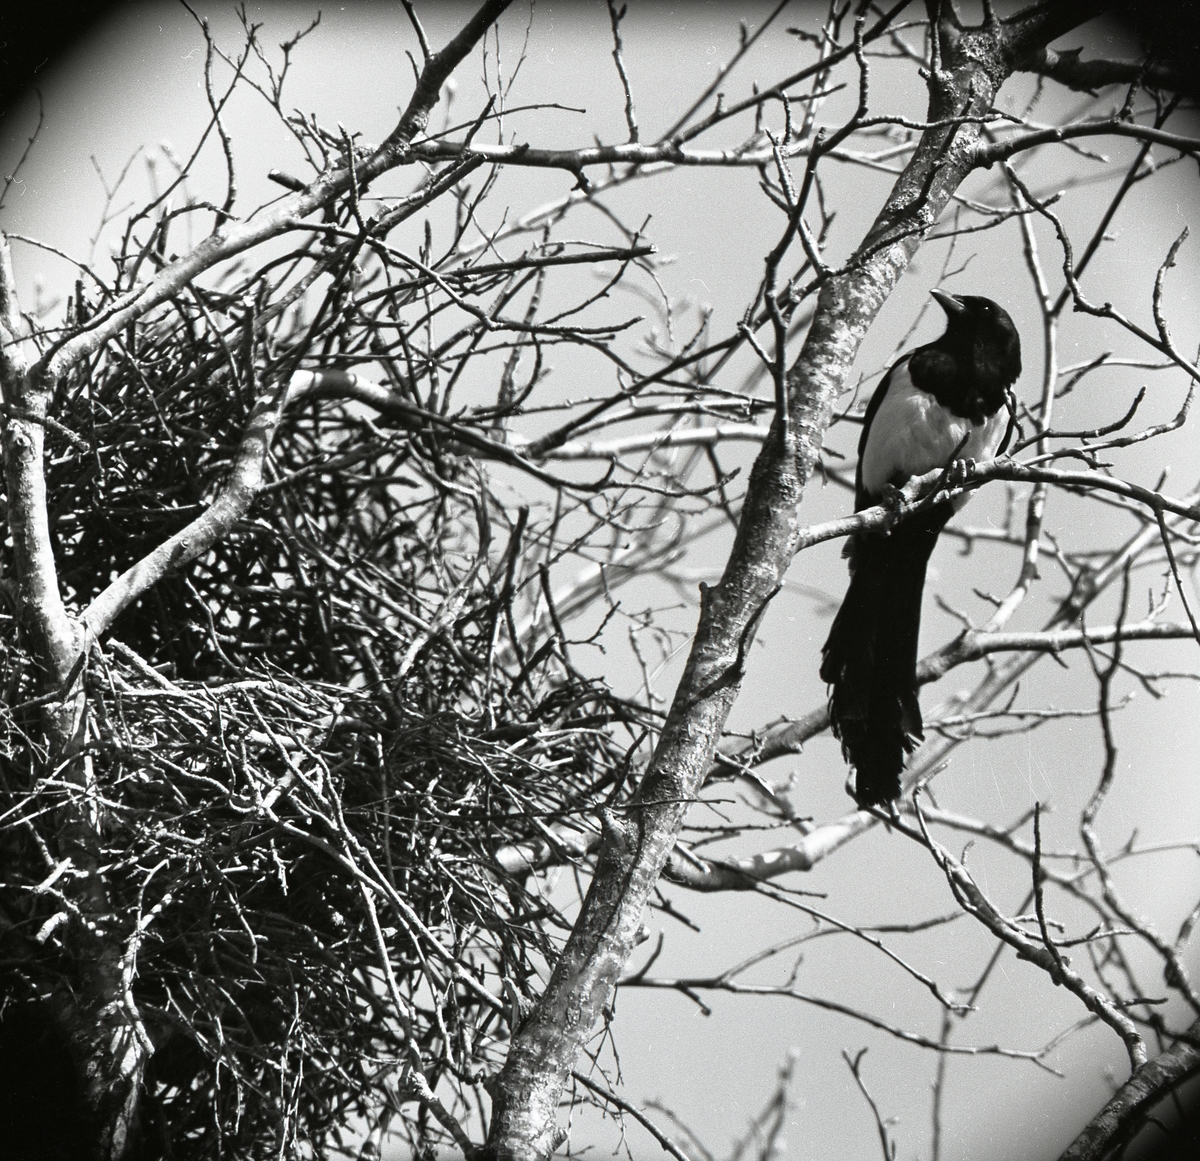 Skata vid sitt bo i ett träd 15 maj 1958.